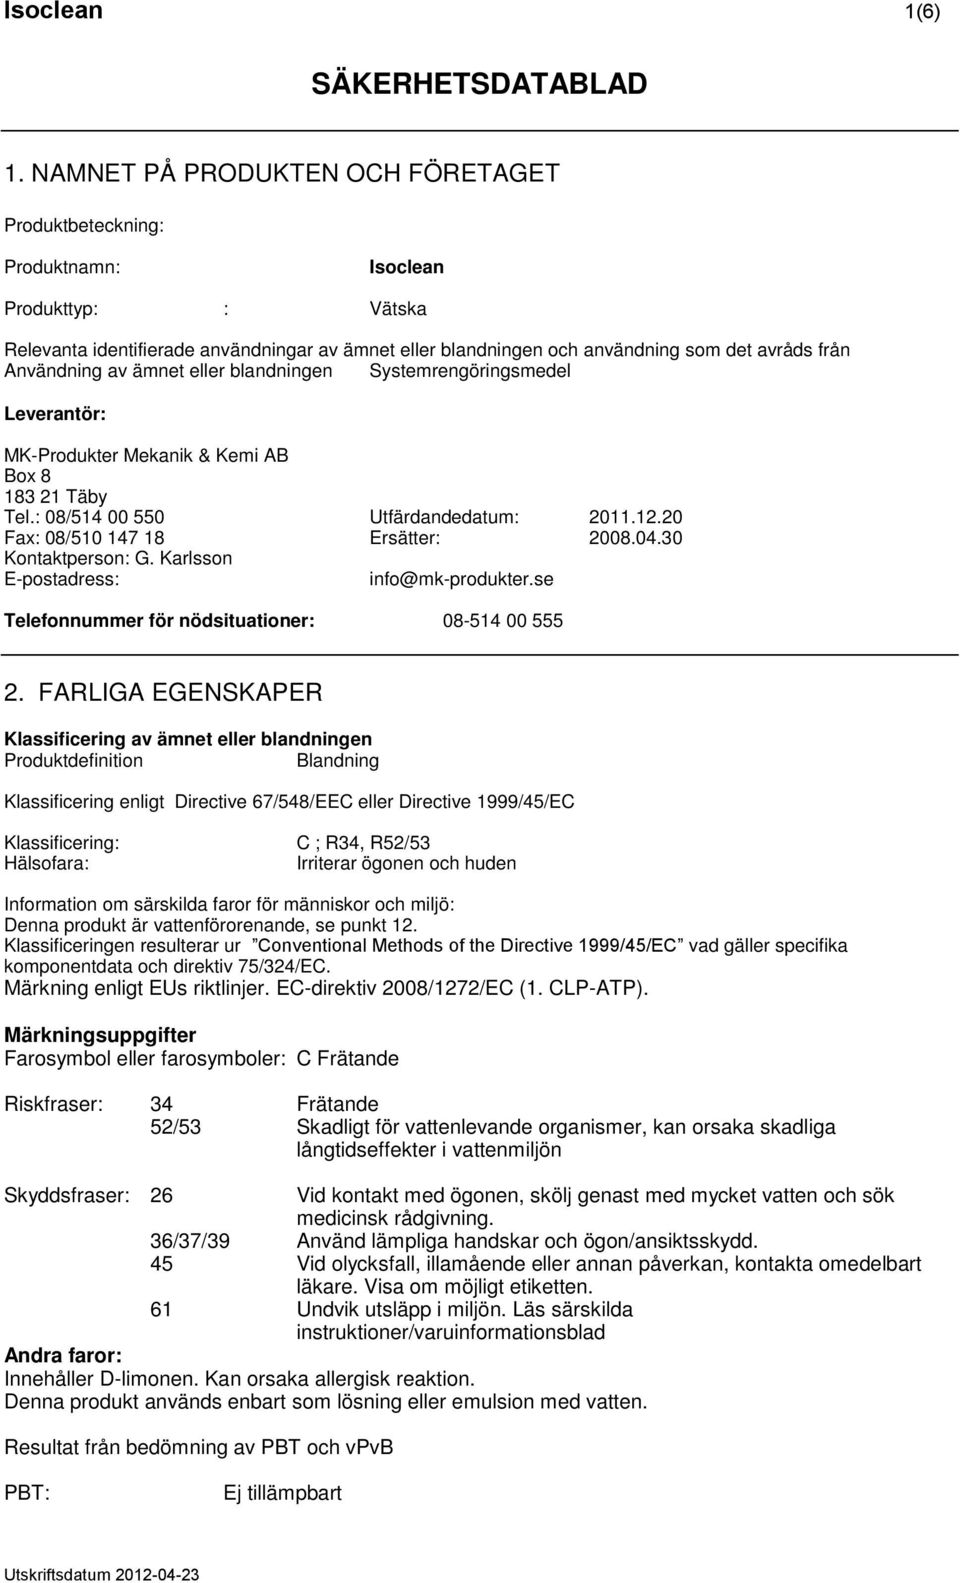 Användning av ämnet eller blandningen Systemrengöringsmedel Leverantör: MK-Produkter Mekanik & Kemi AB Box 8 183 21 Täby Tel.: 08/514 00 550 Utfärdandedatum: 2011.12.